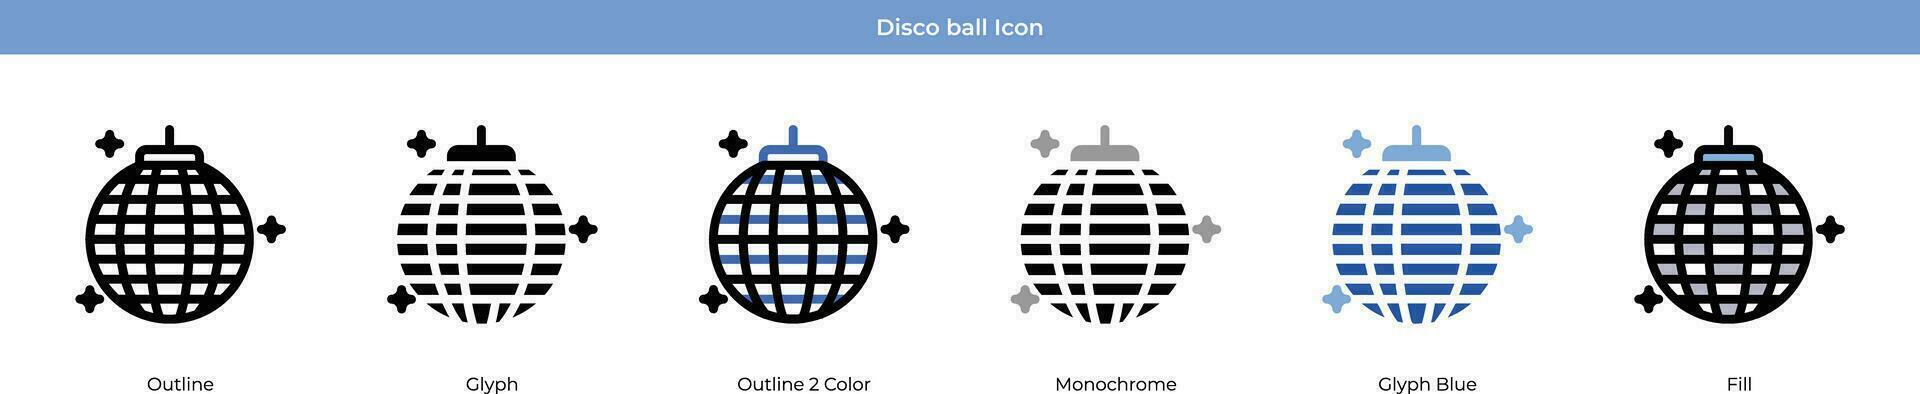 disko boll ny år ikon uppsättning vektor